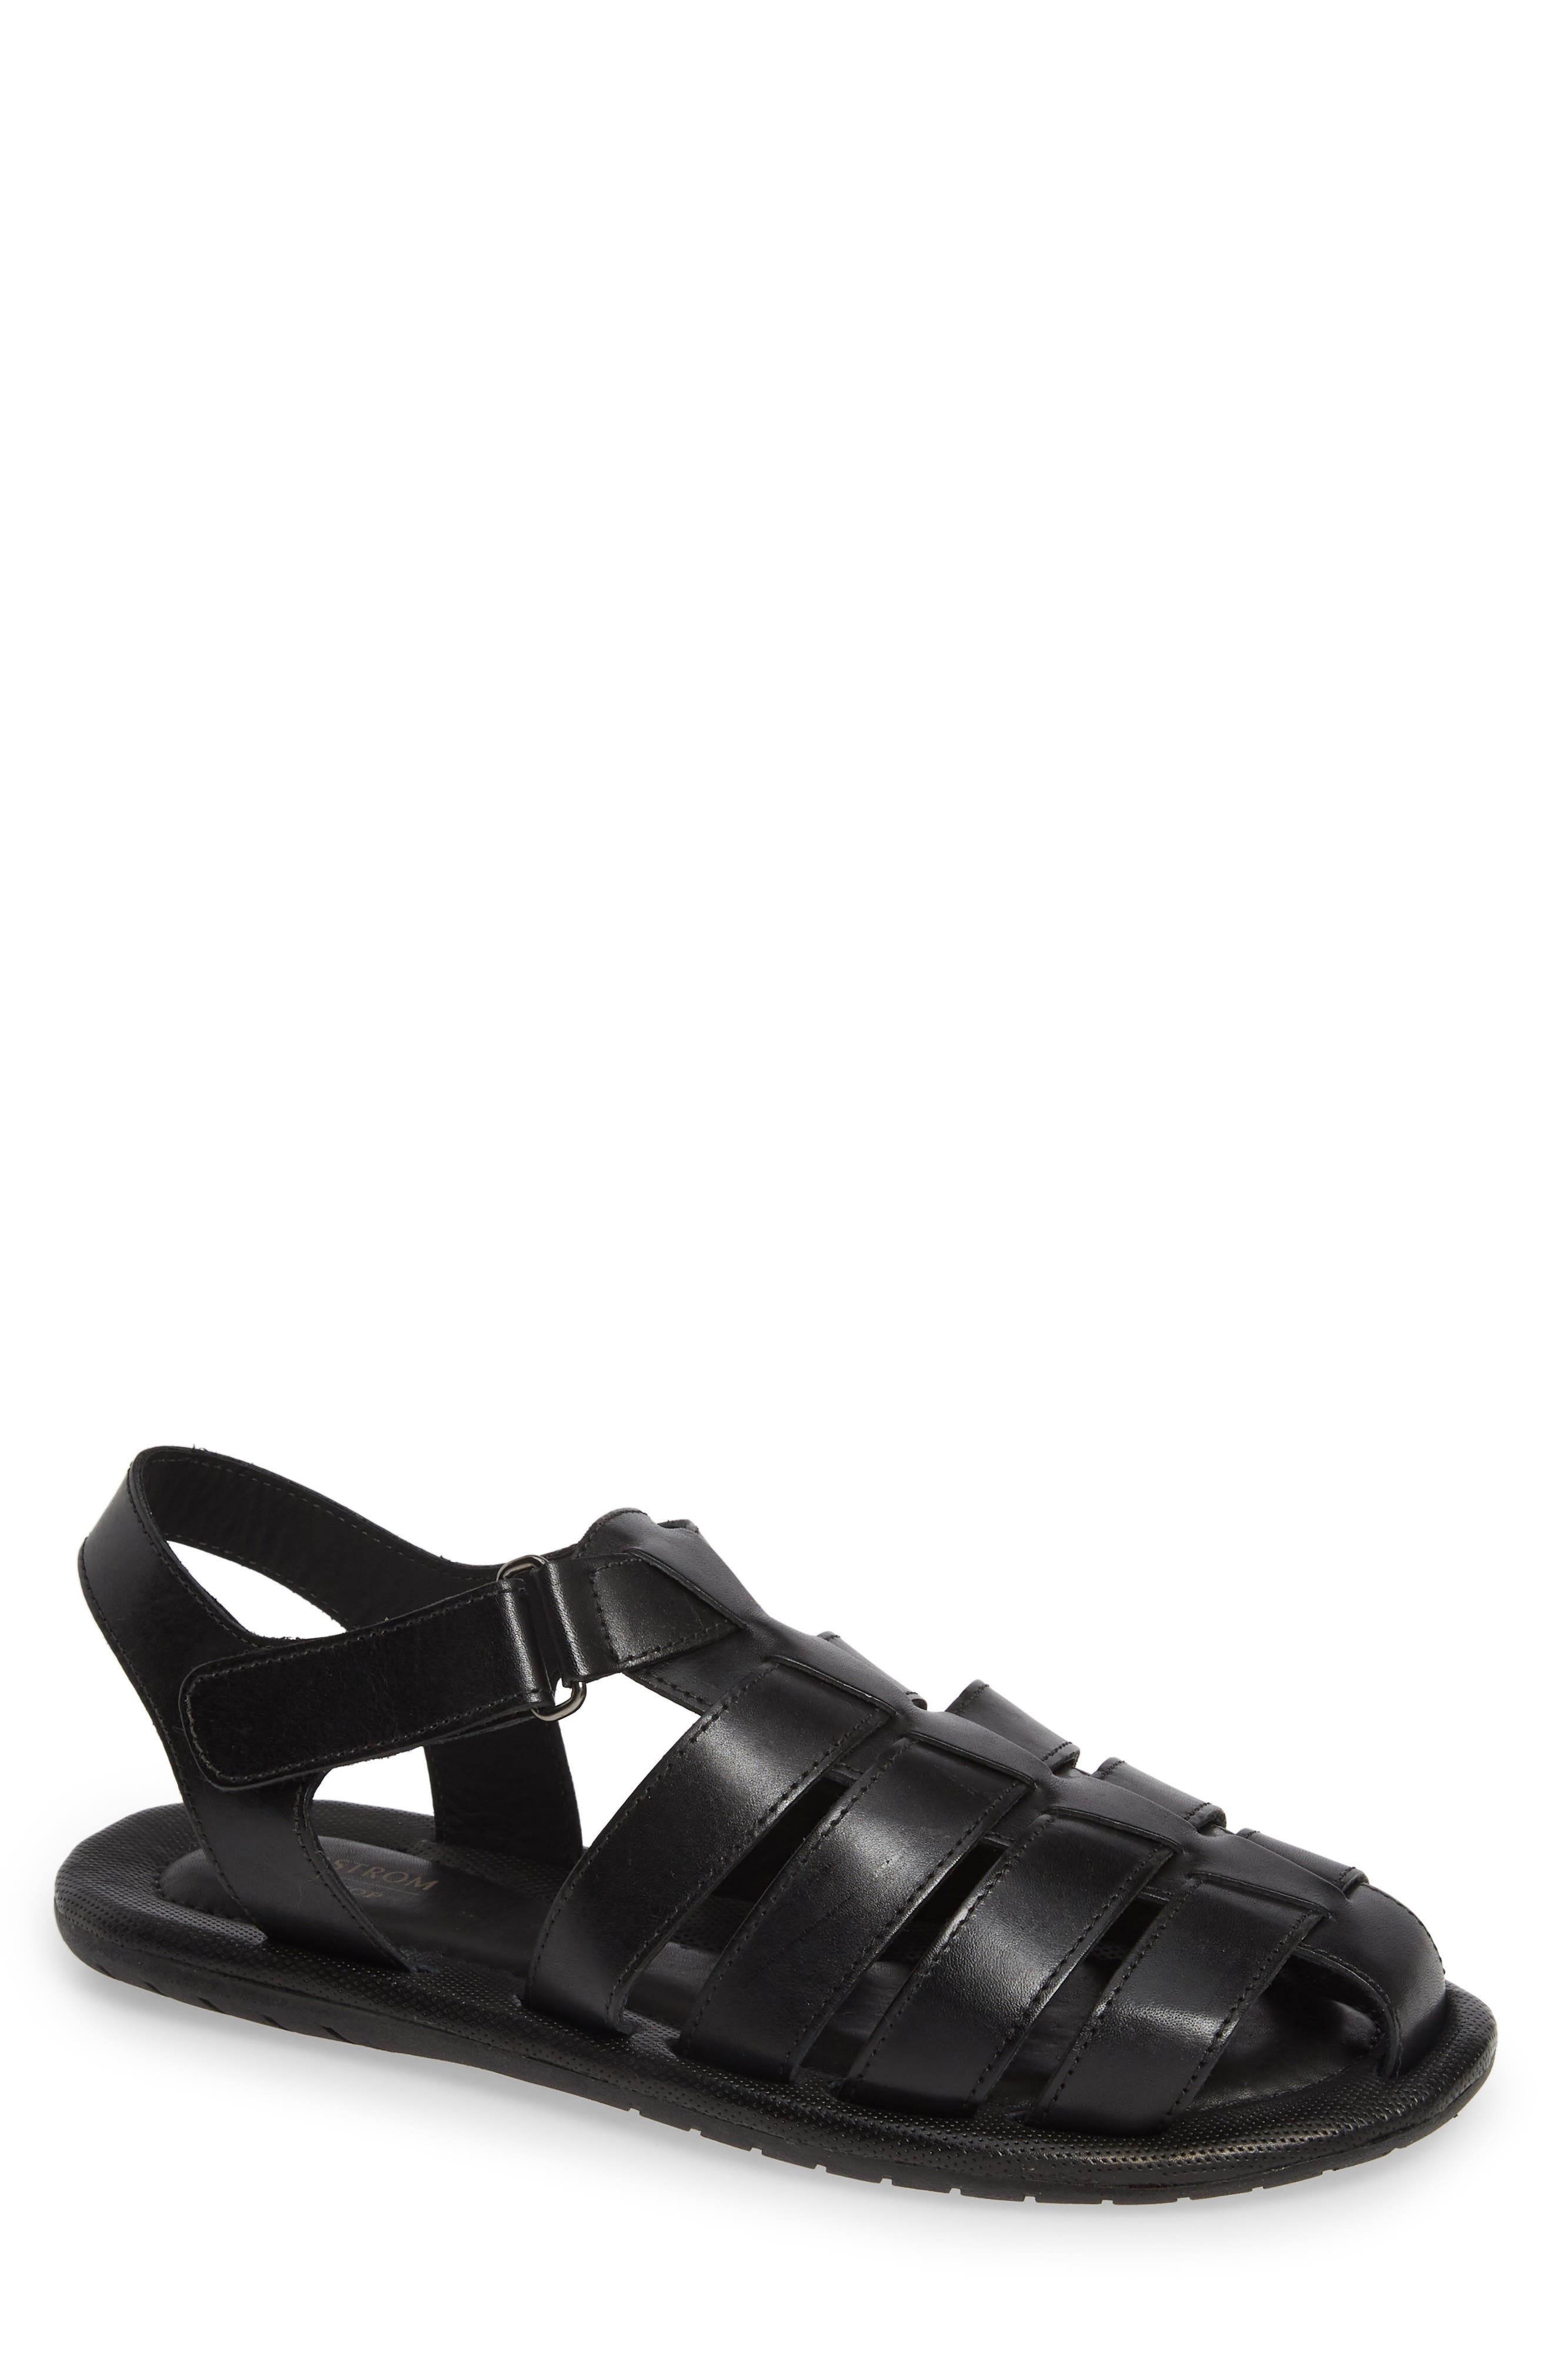 Shop Sandals \u0026 Flip-Flops: Sale | Nordstrom